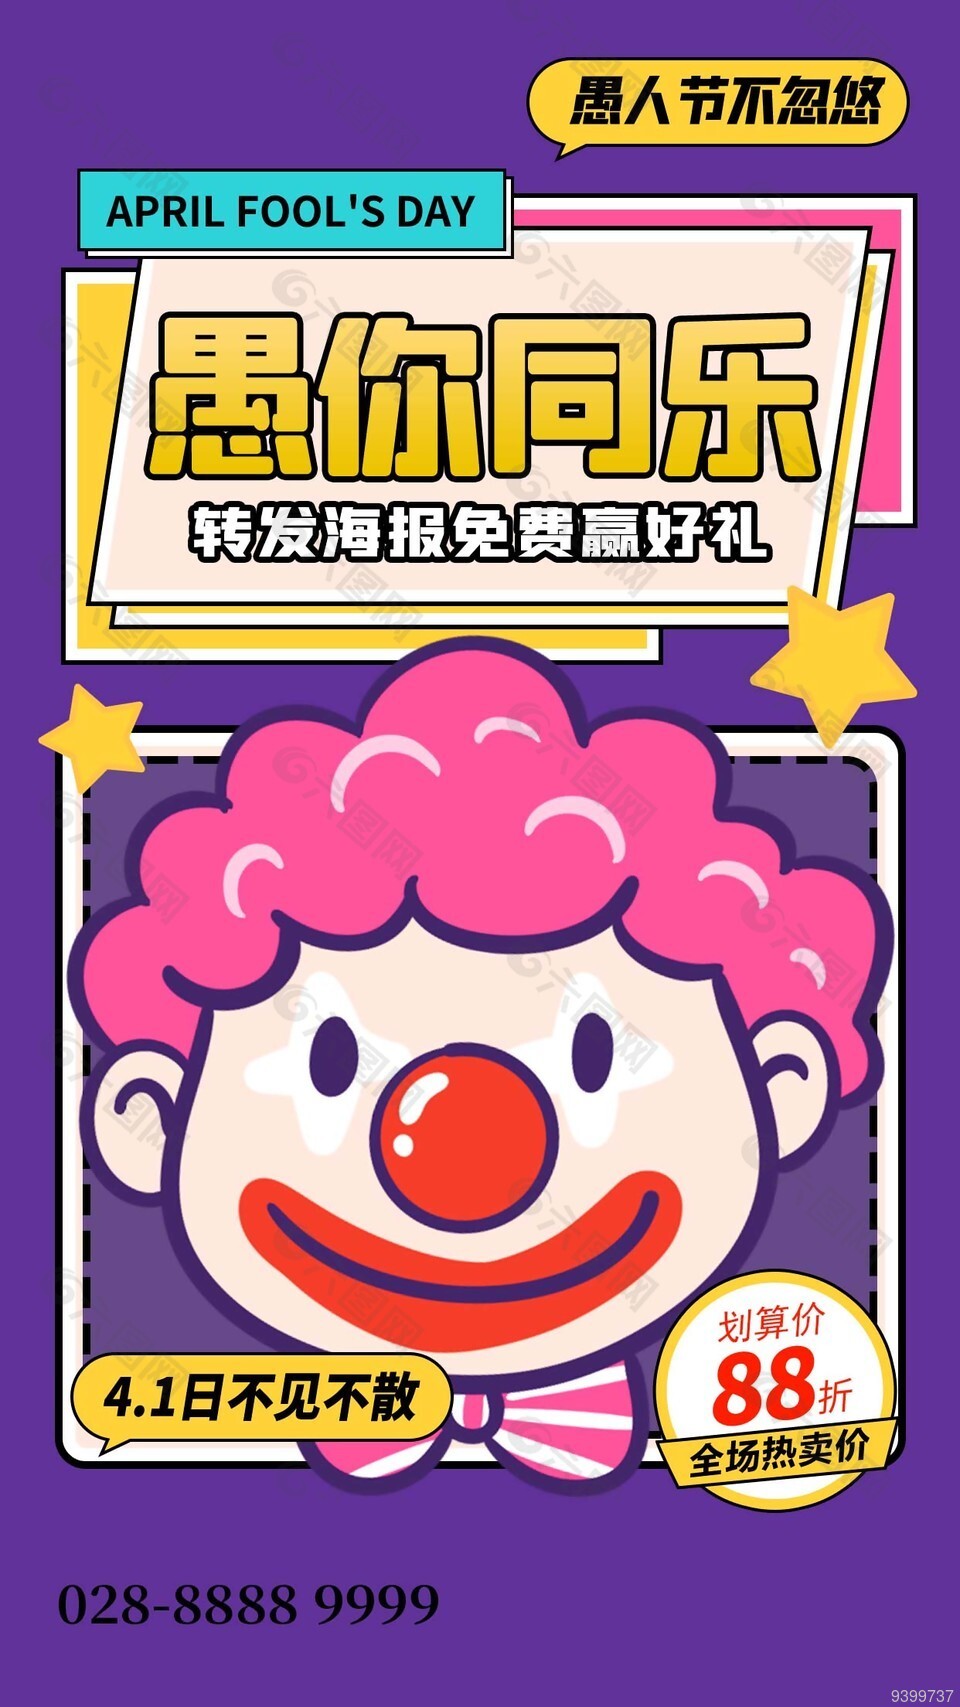 紫色小丑愚人节活动海报素材下载